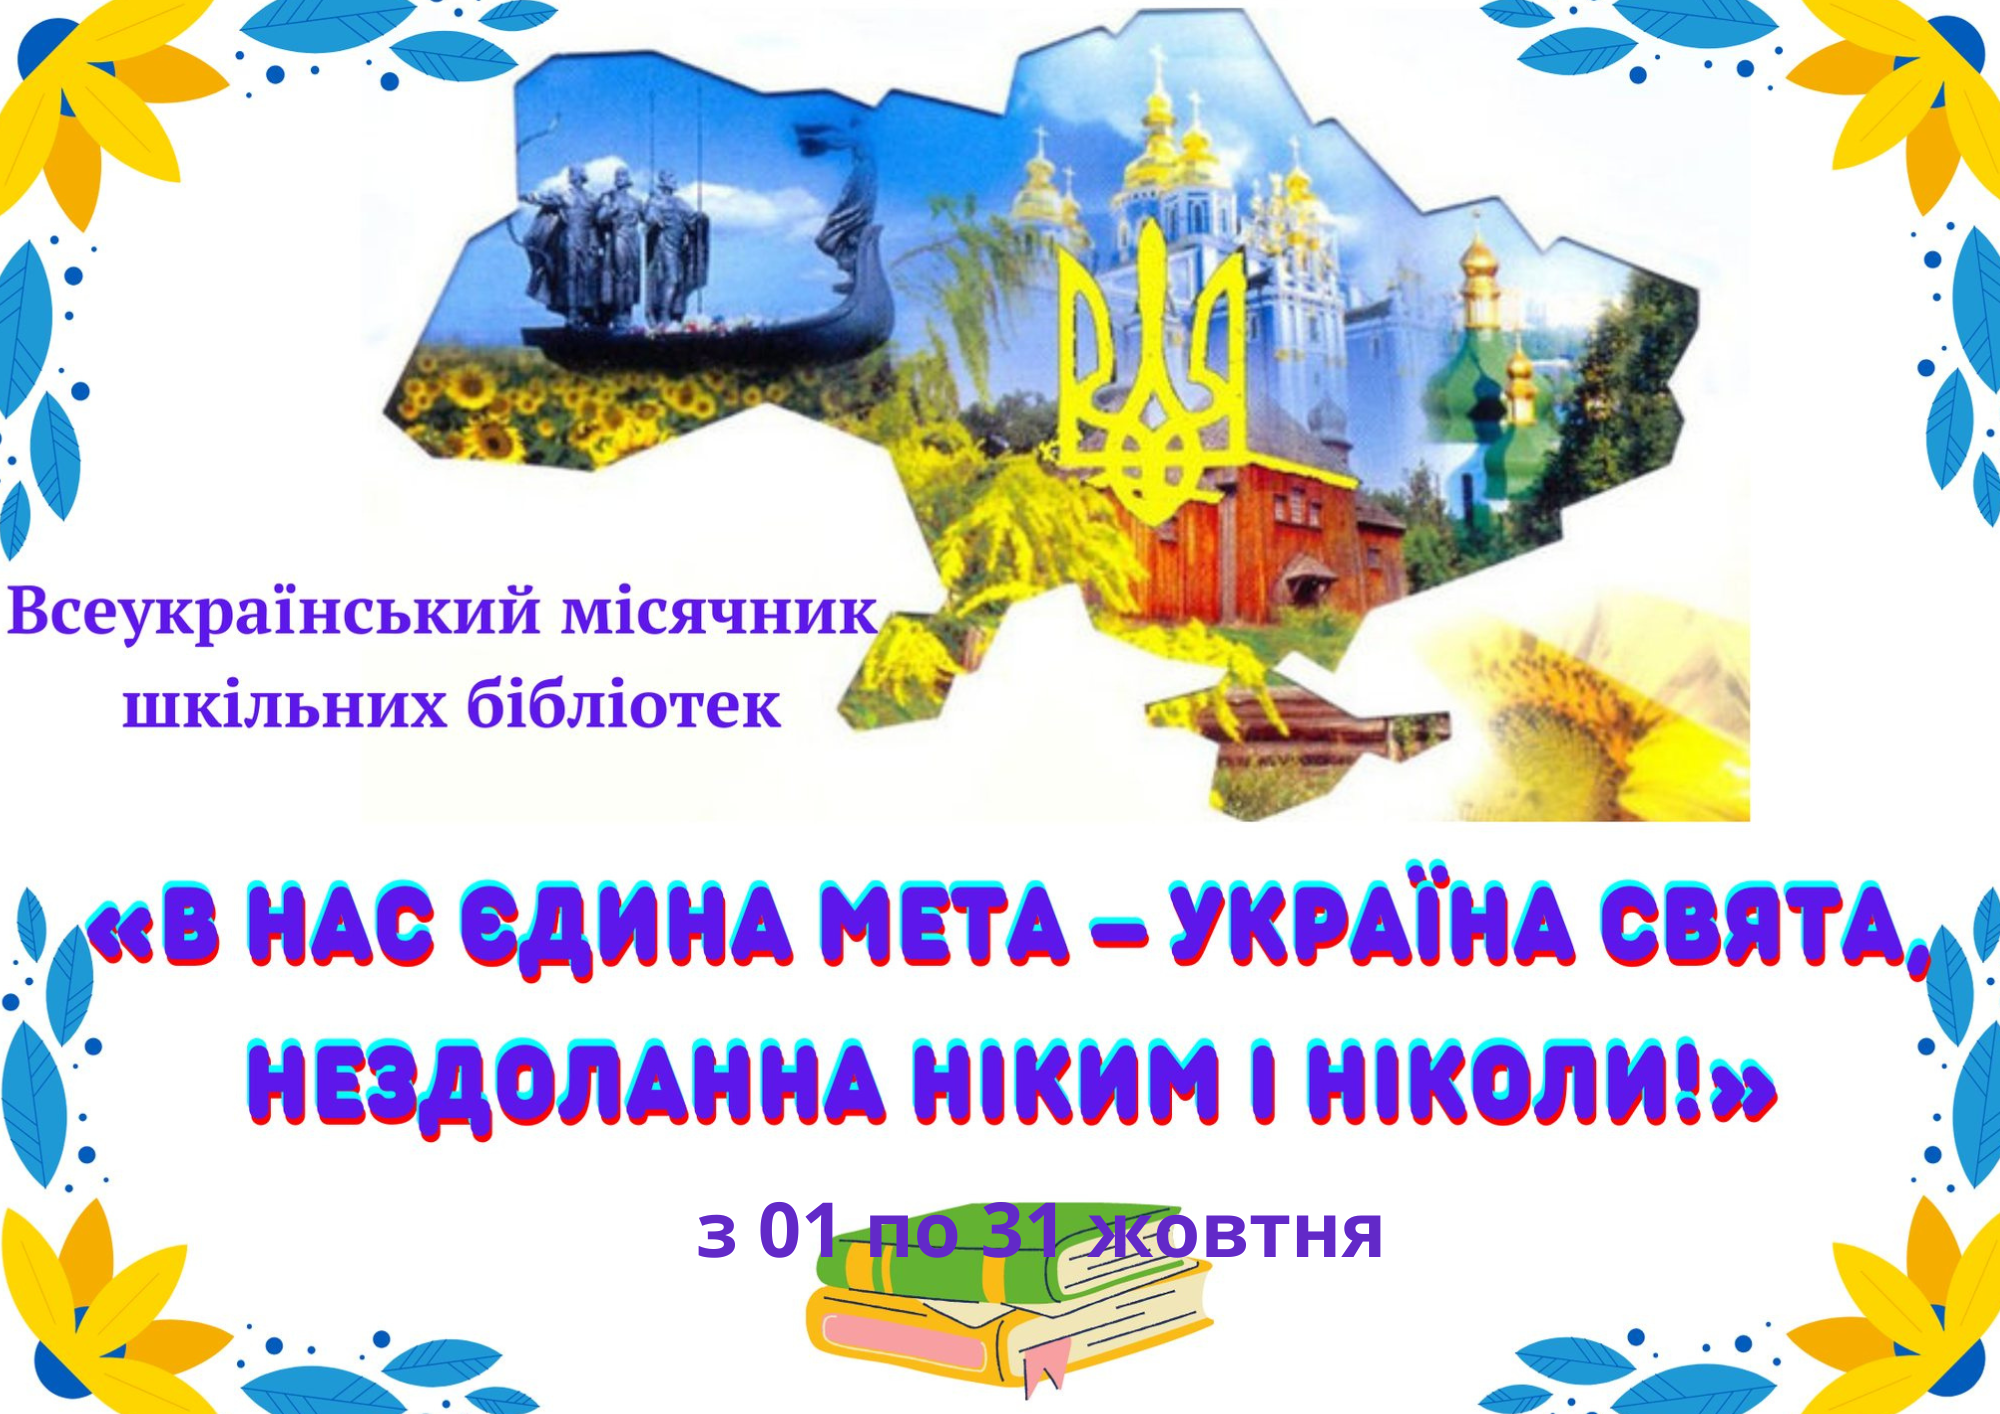 Всеукраїнський місячник бібліотек — 1-31 жовтня